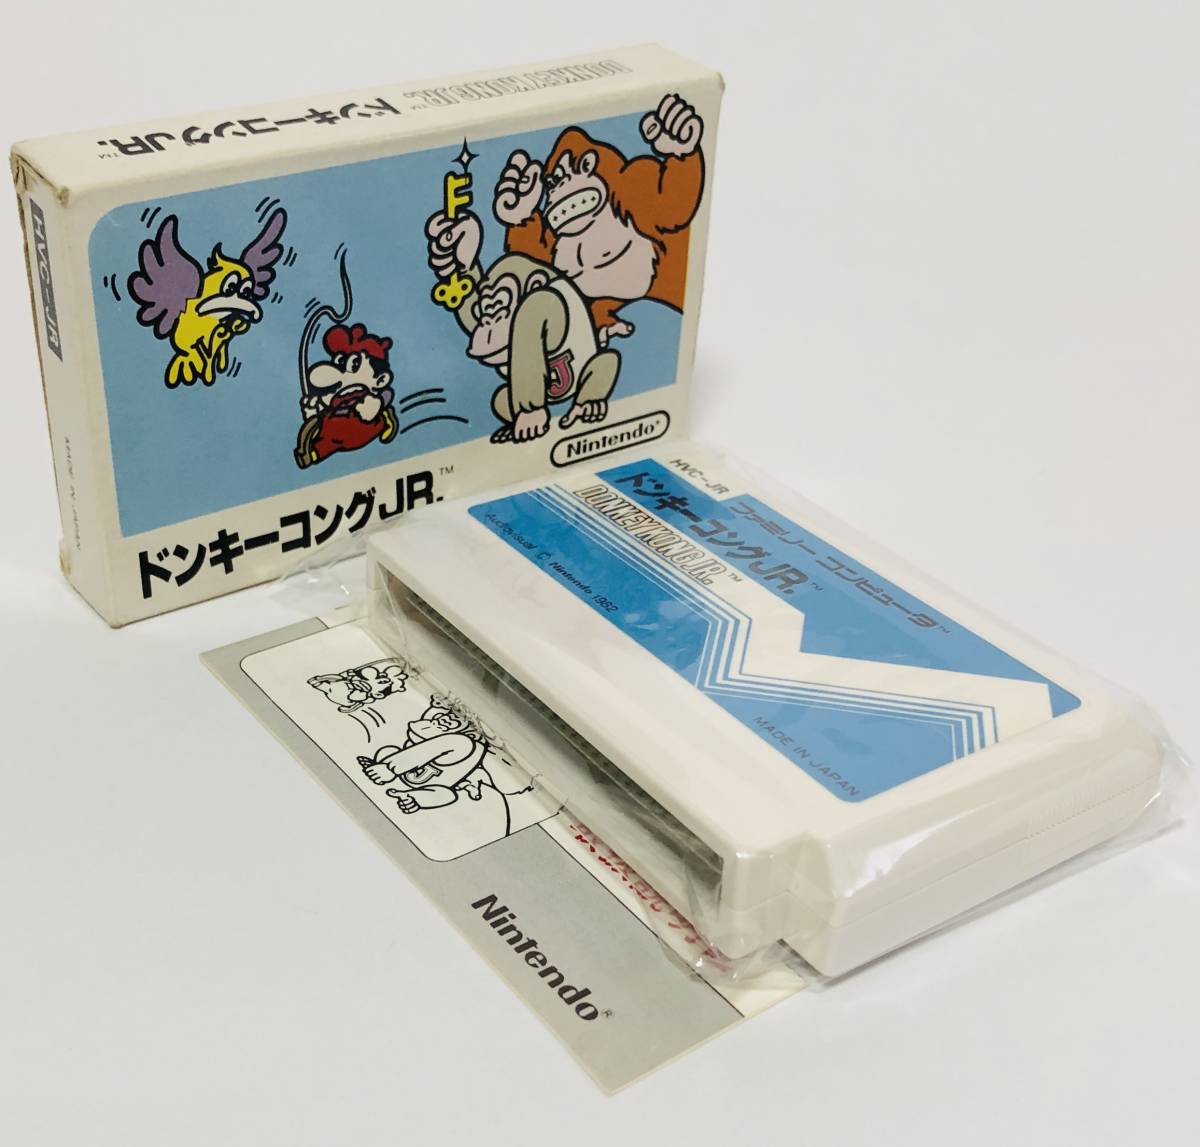 【送料無料】 ファミコン ドンキーコングJR. 箱説付き 小箱版 任天堂 レトロゲーム Nintendo Famicom Donkey Kong Jr. CIB